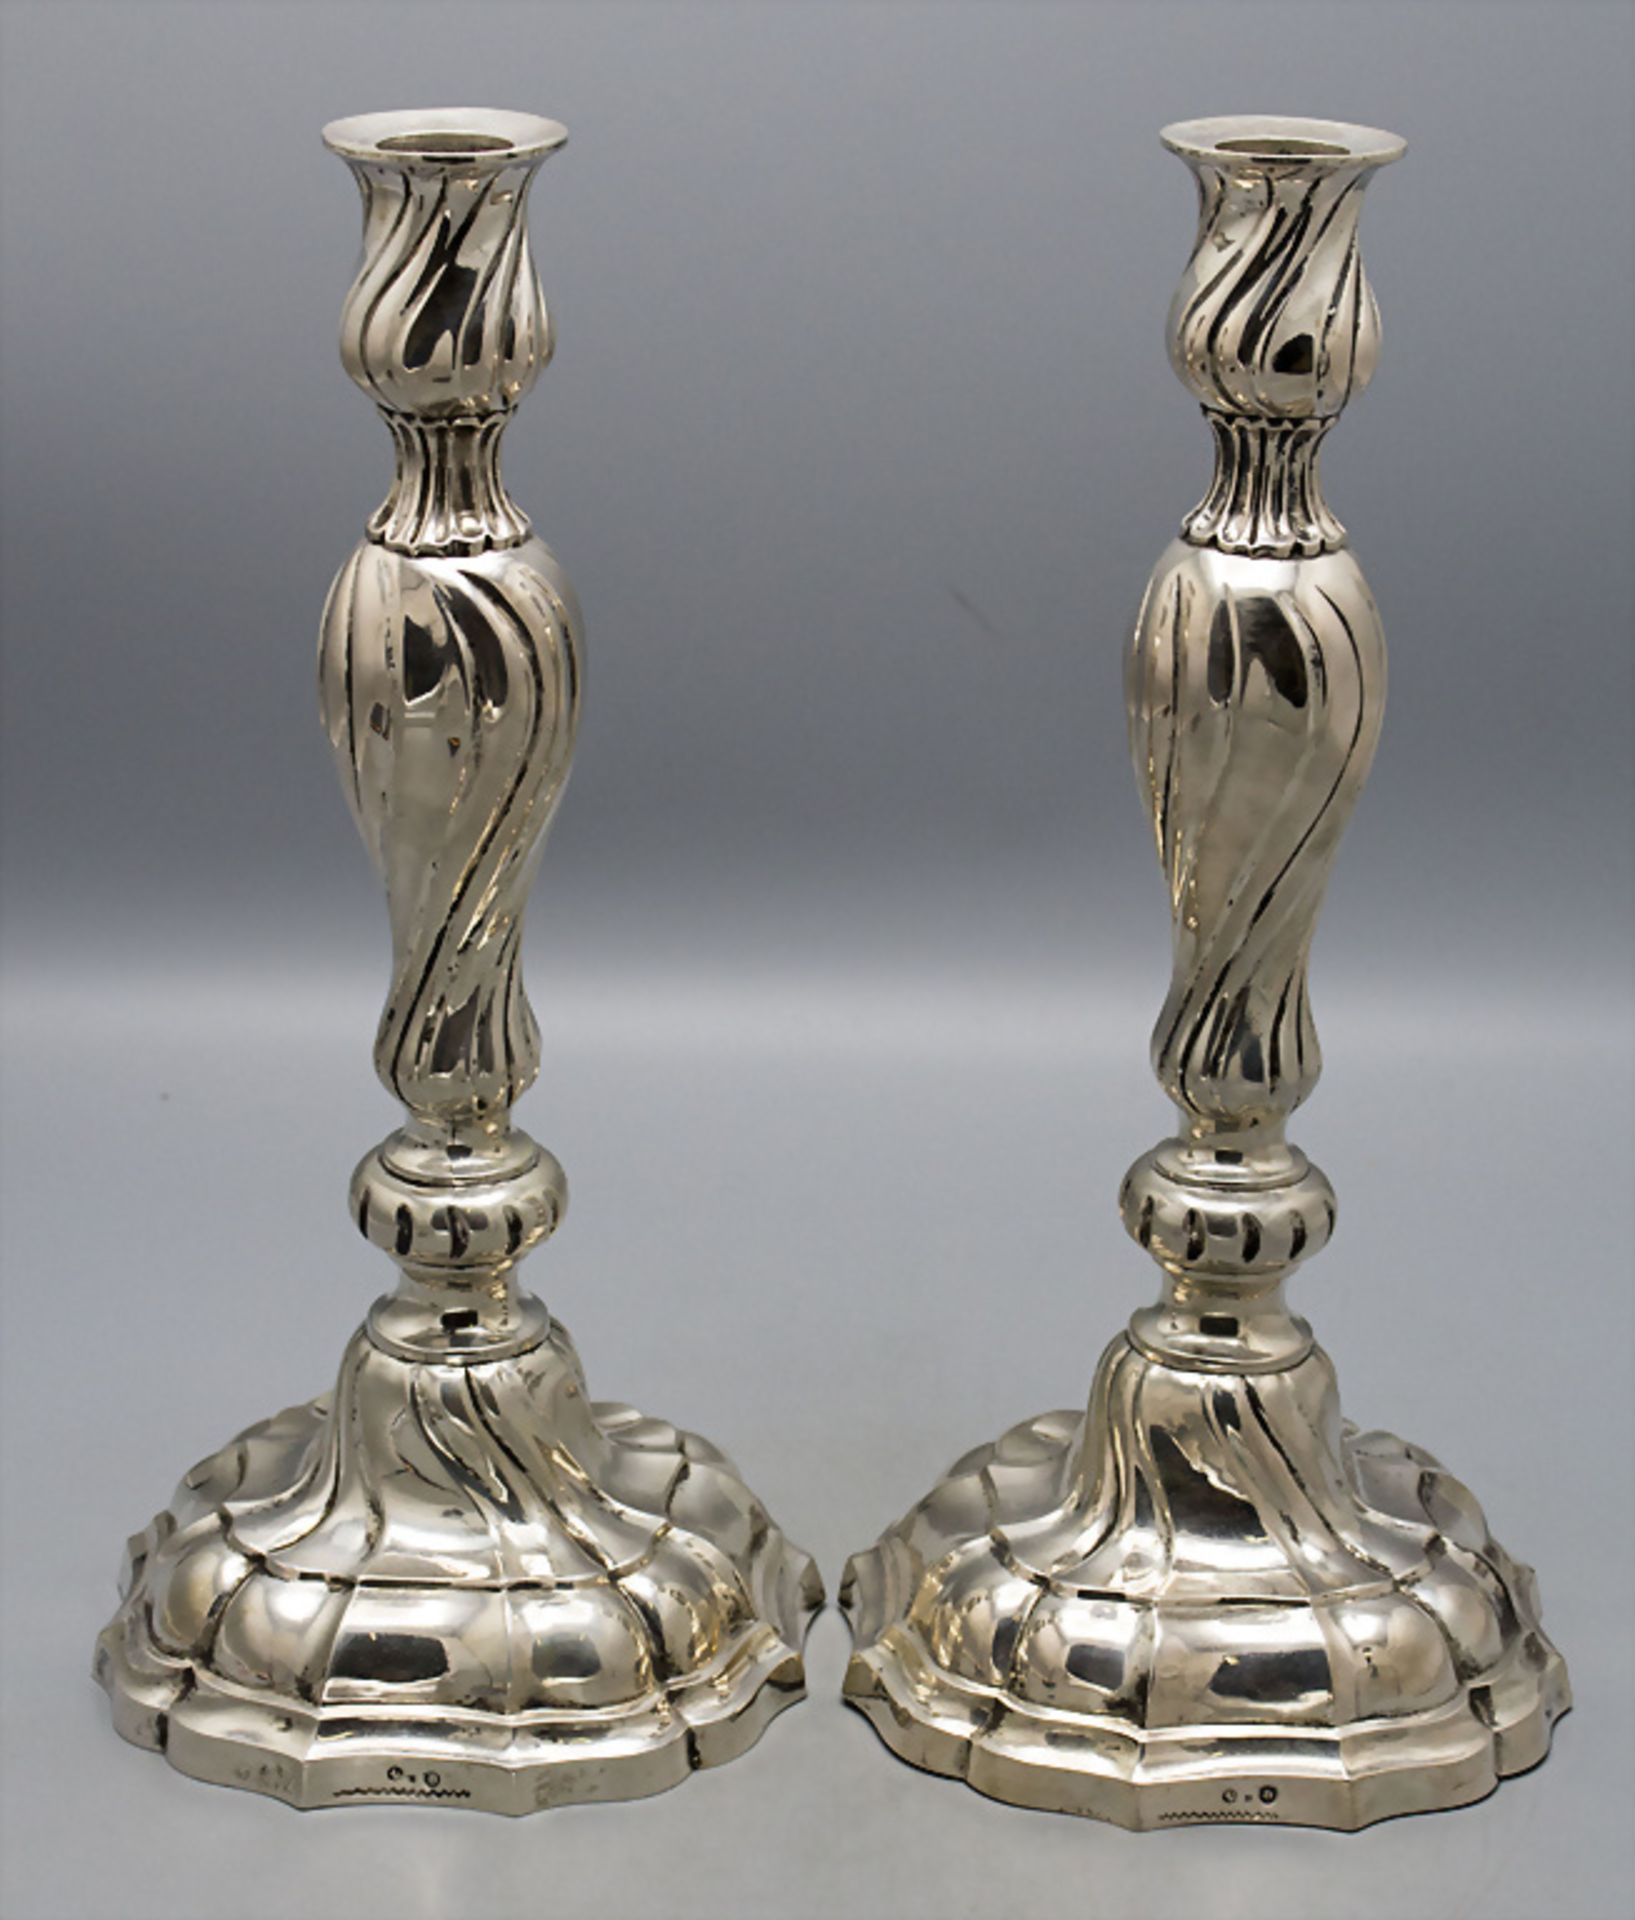 Paar Kerzenleuchter / A pair of silver candlesticks, Berlin, 19. Jh.